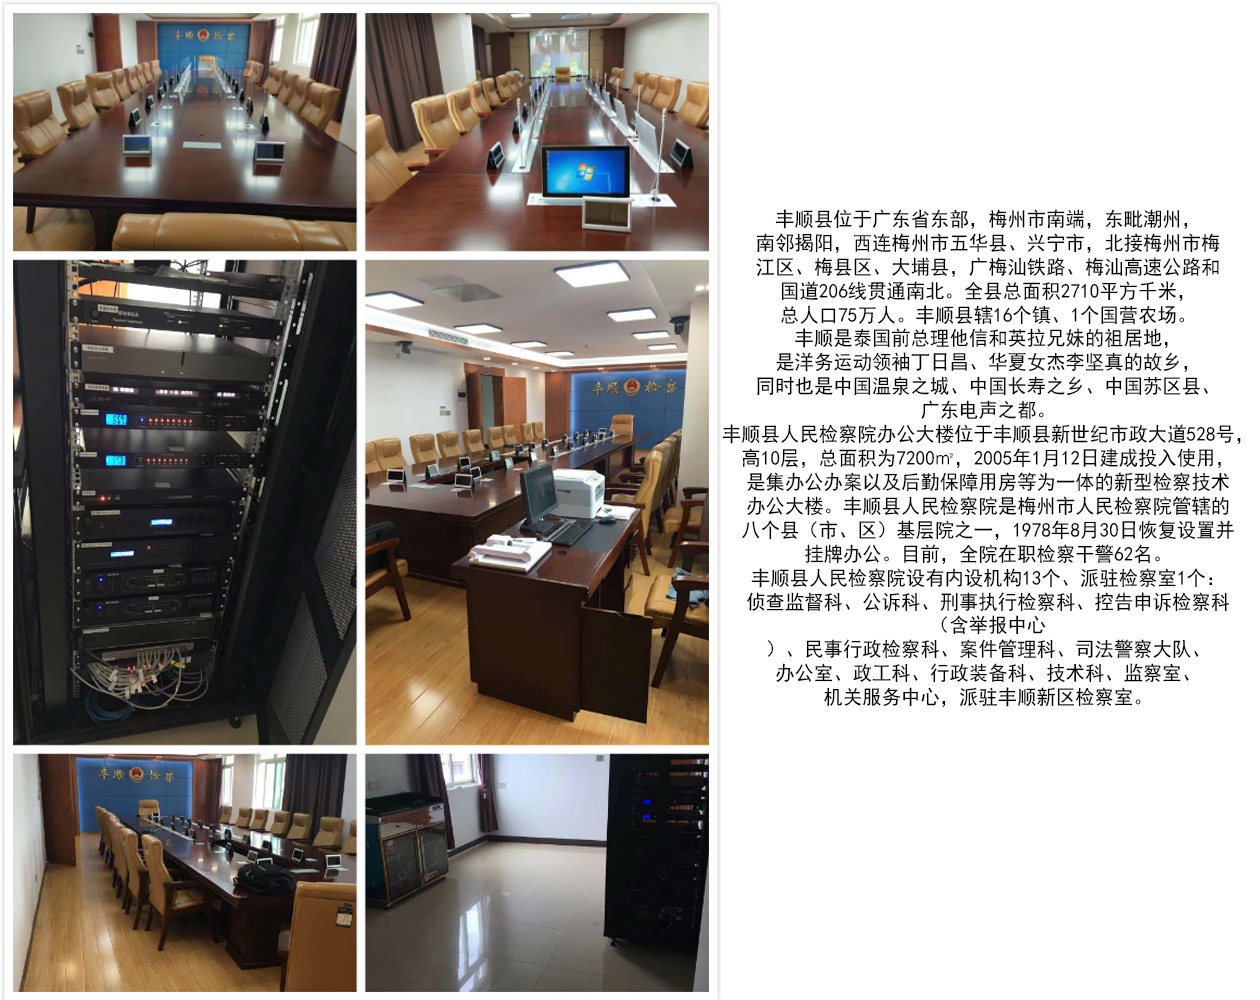 丰顺县人民检察院检委会会议室信息化建设项目